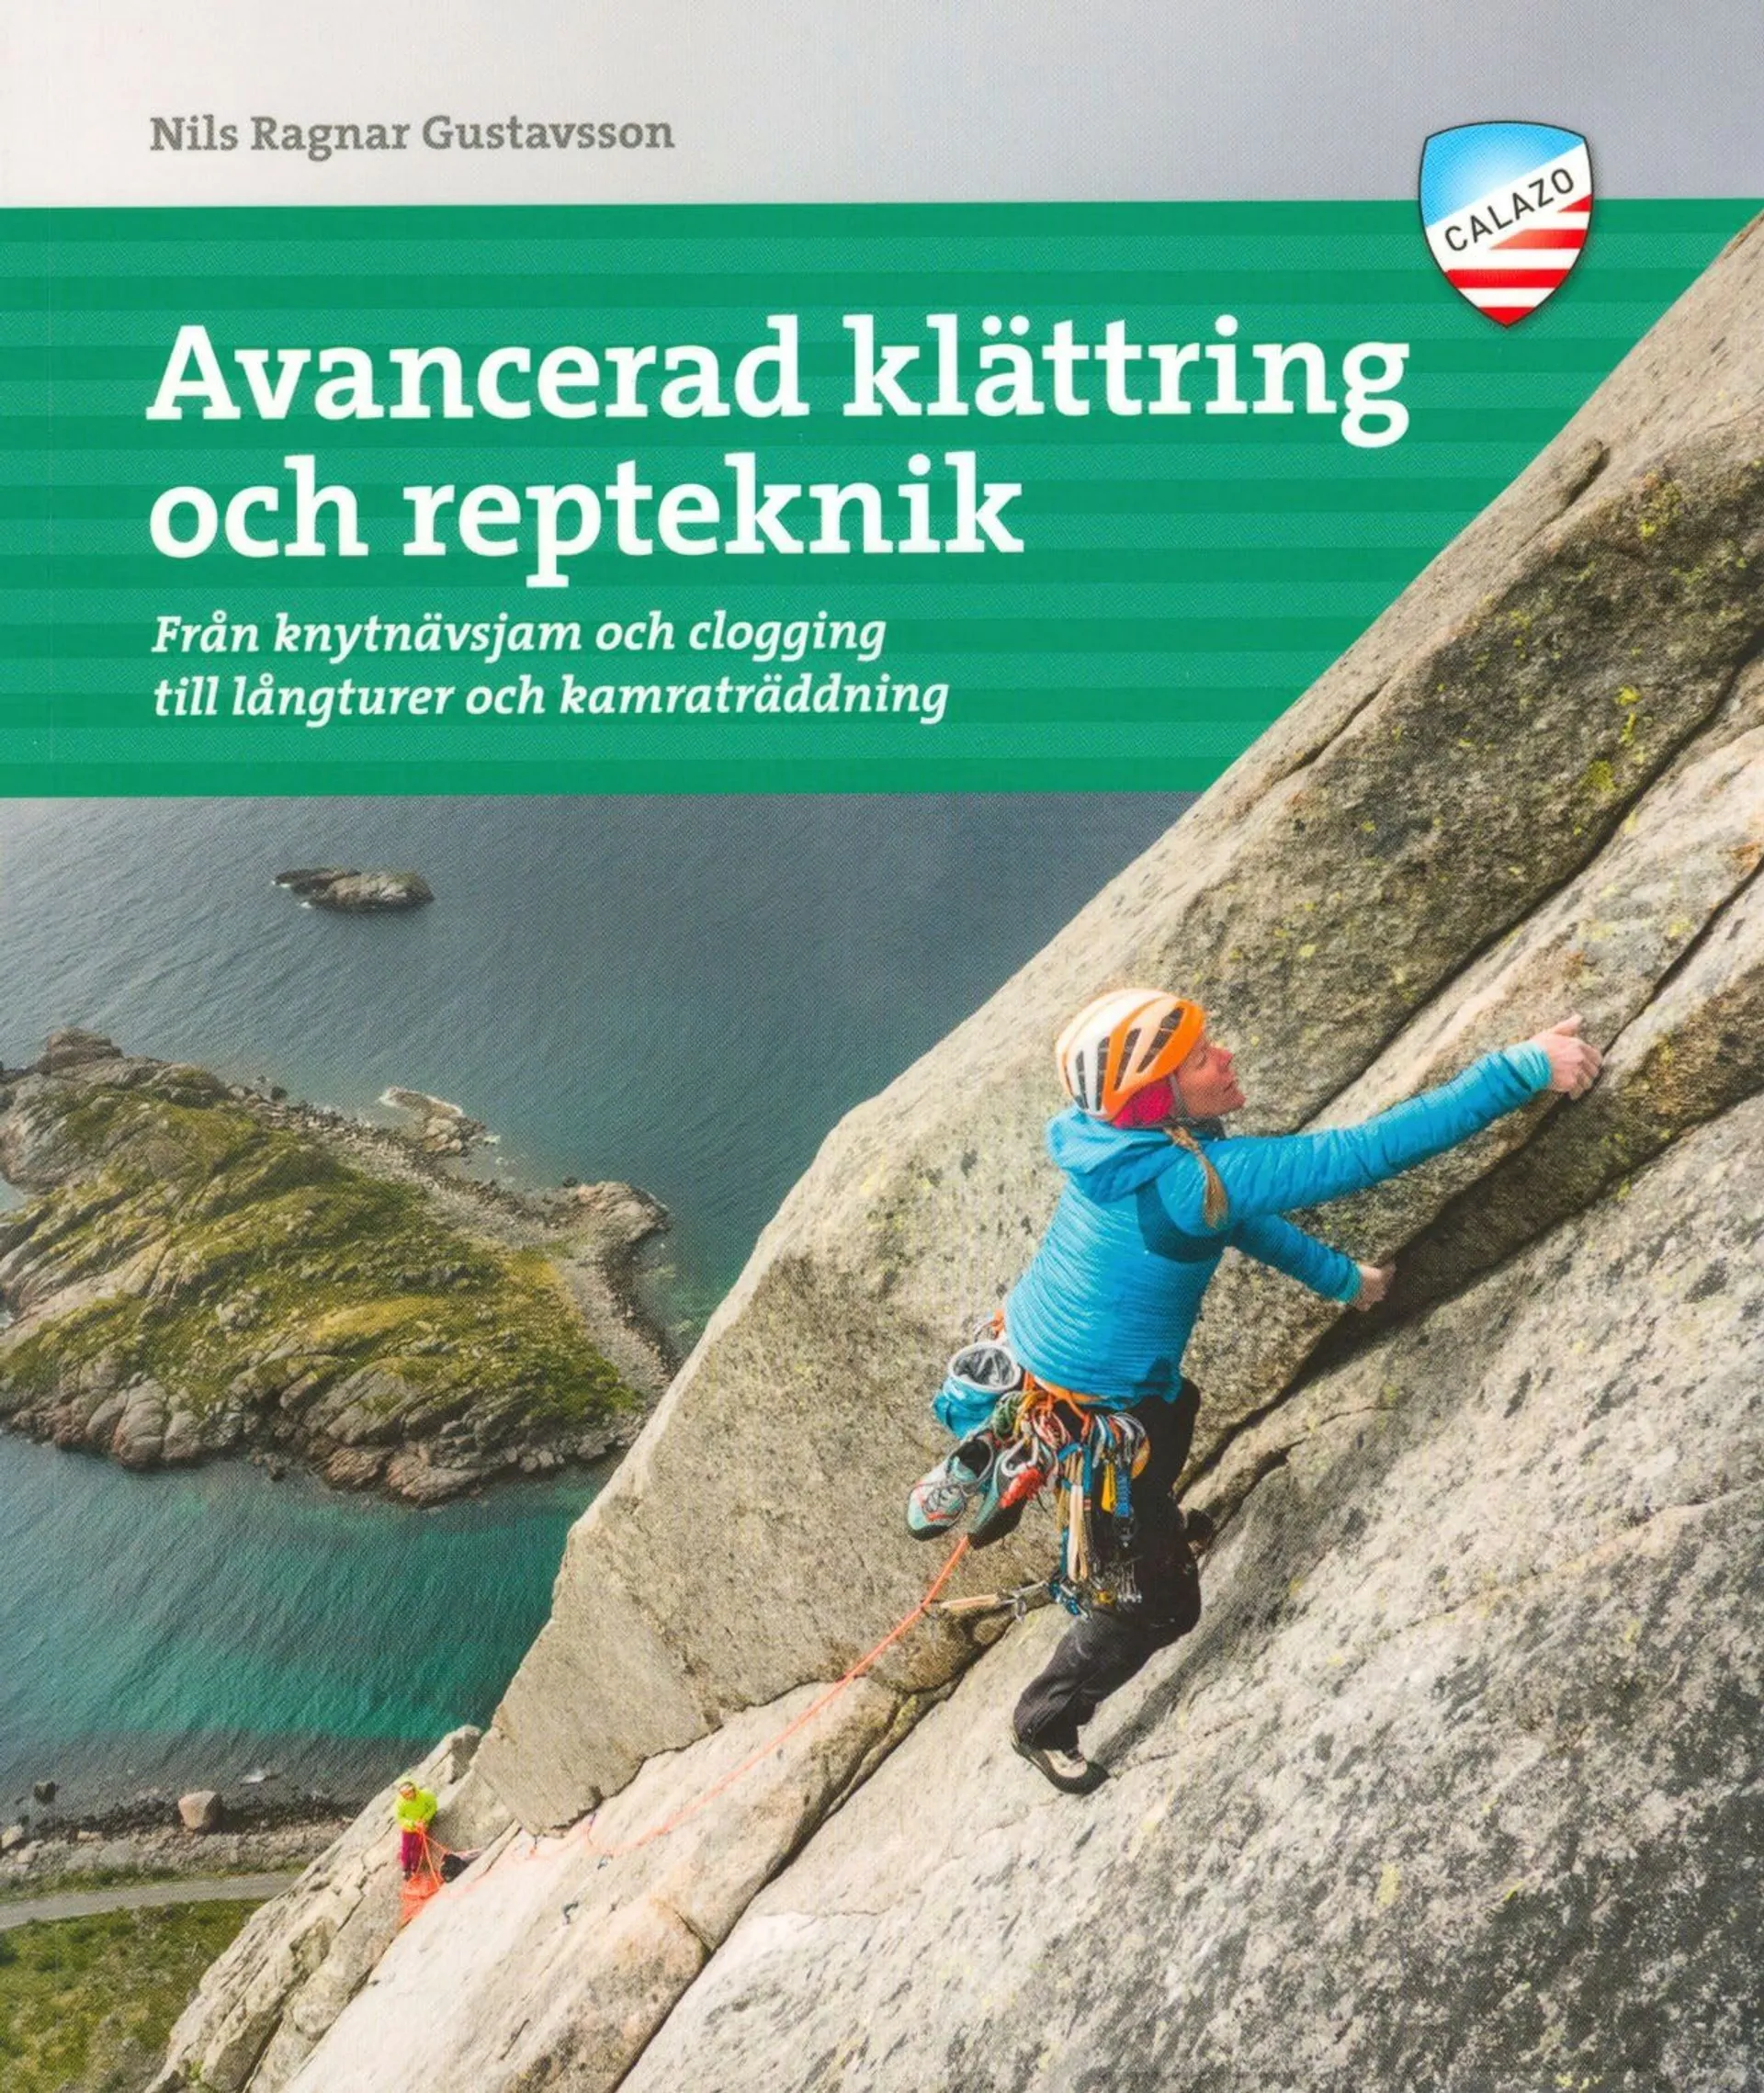 Gustavsson, Avancerad klättring och repteknik